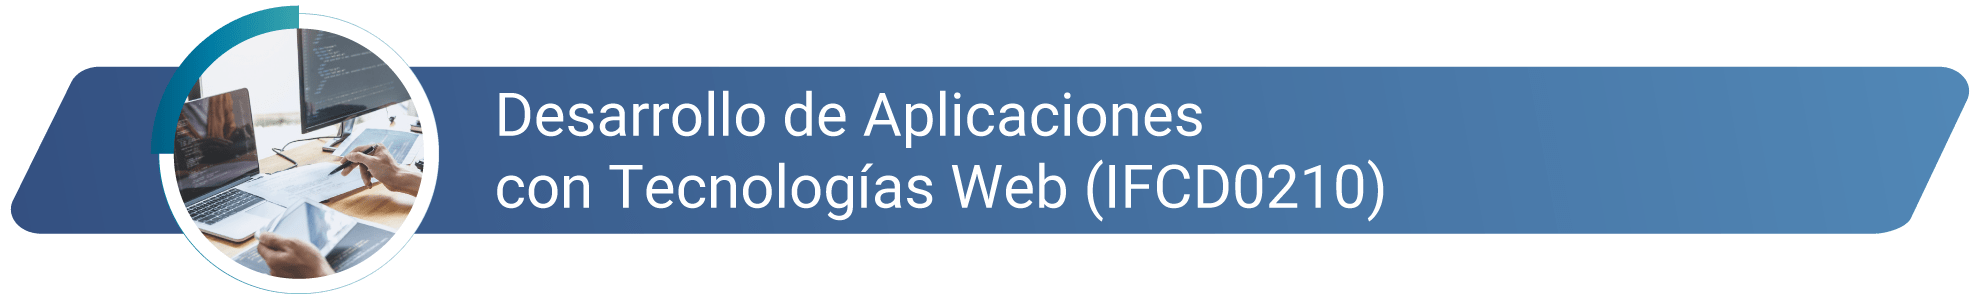 IFCD0210 - Desarrollo de aplicaciones con tecnologías web